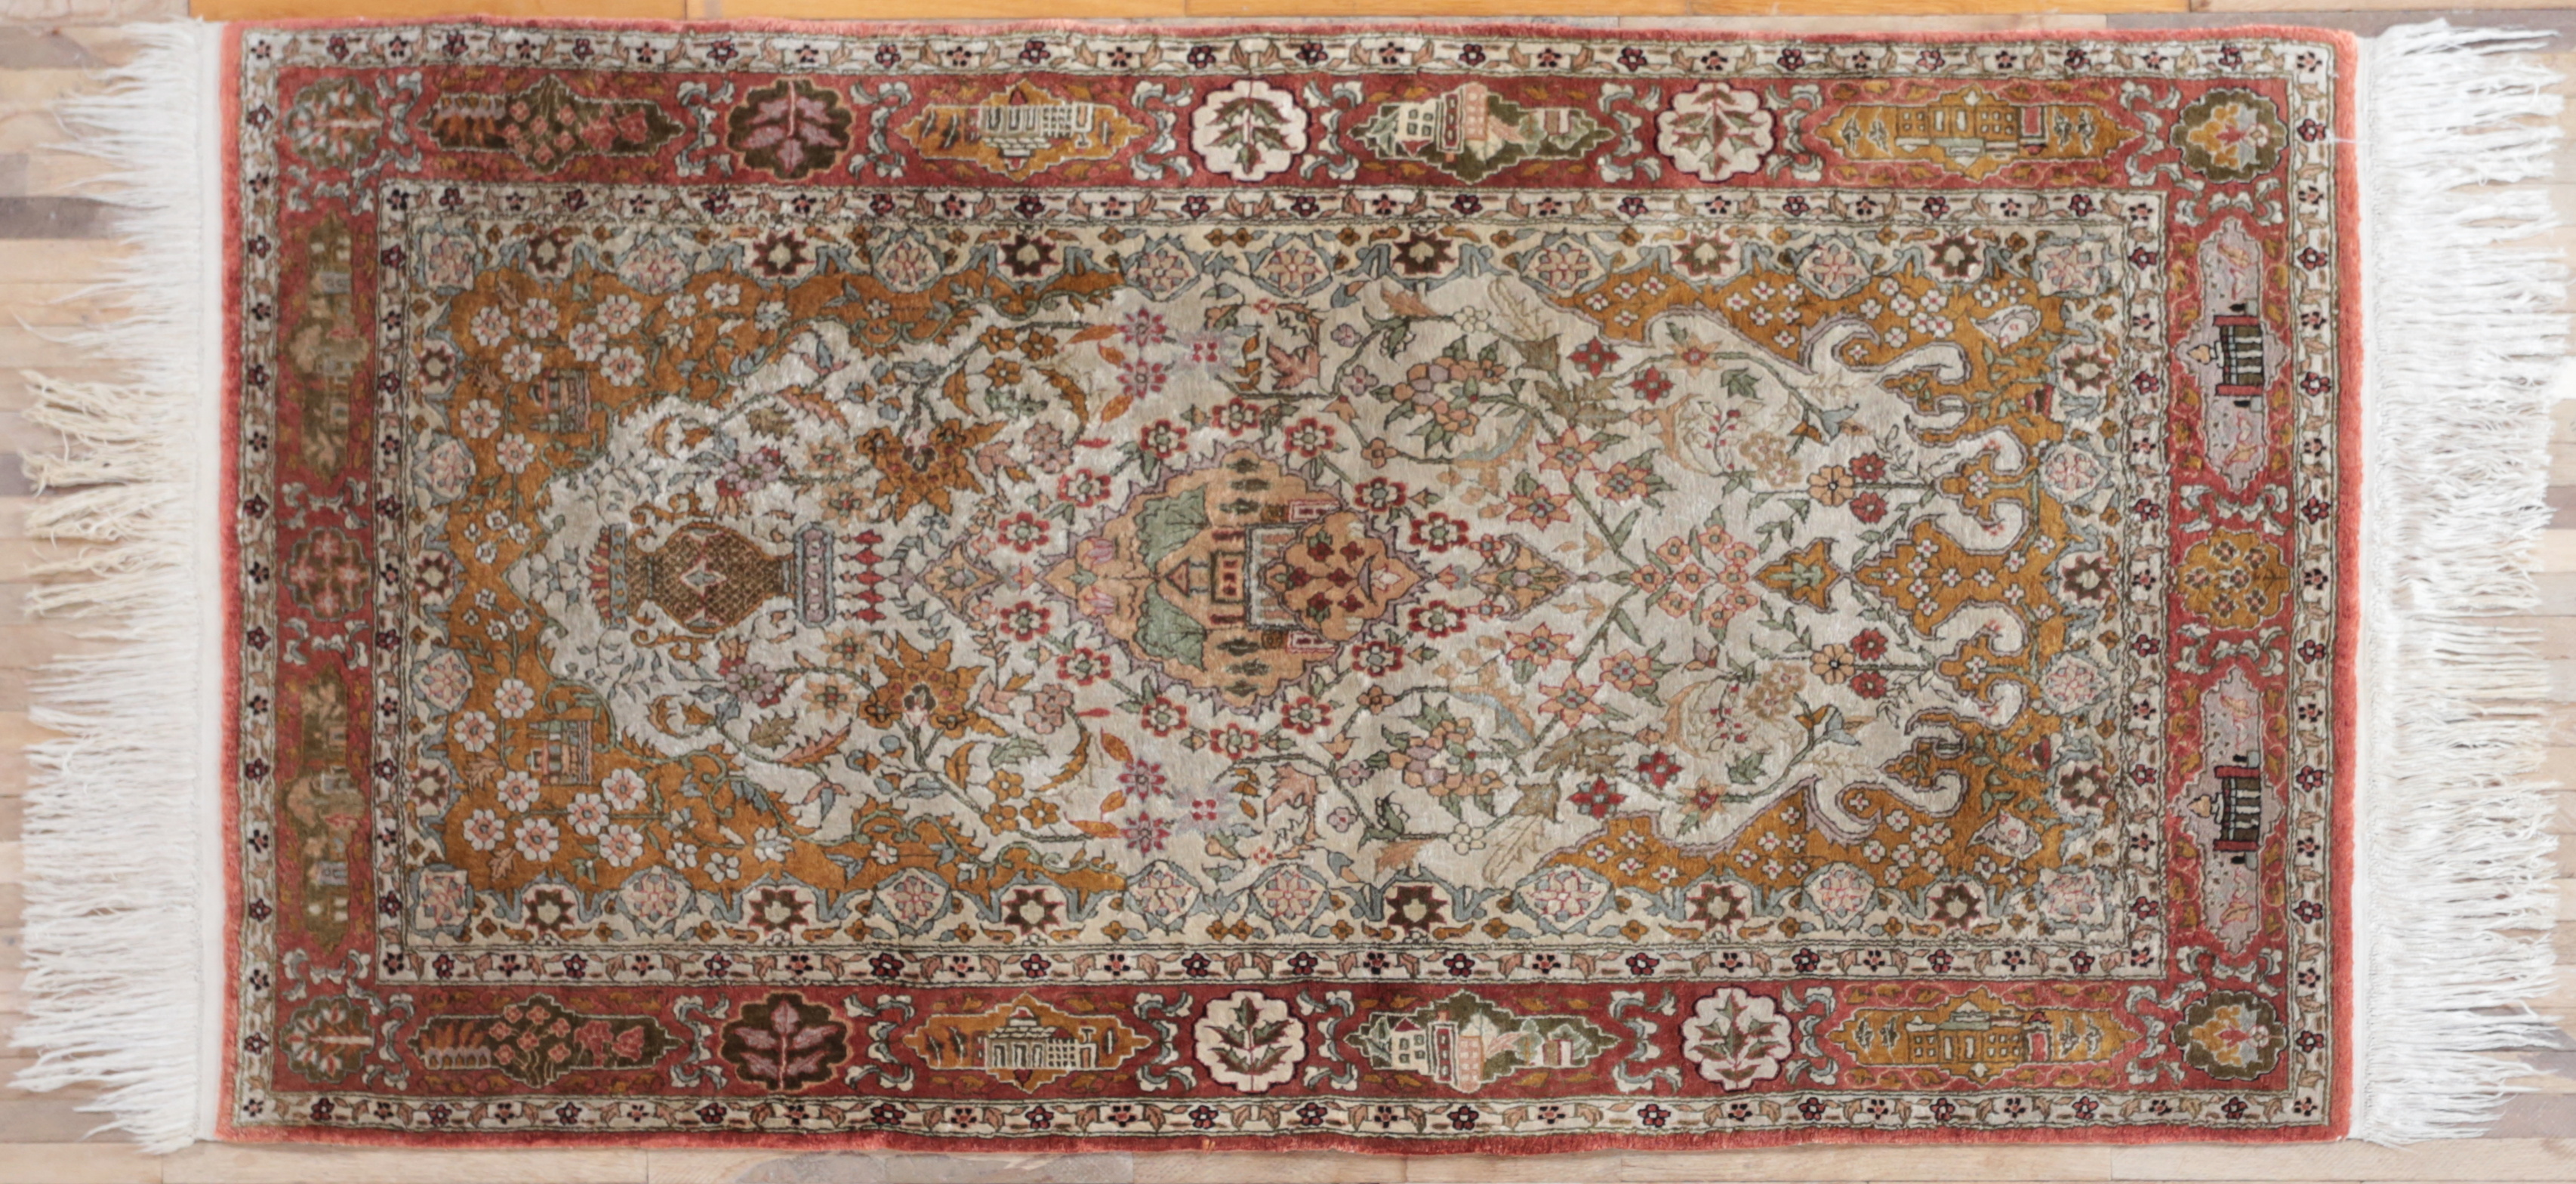 Celohedvábný perský koberec Ghoum 180 x 95 cm